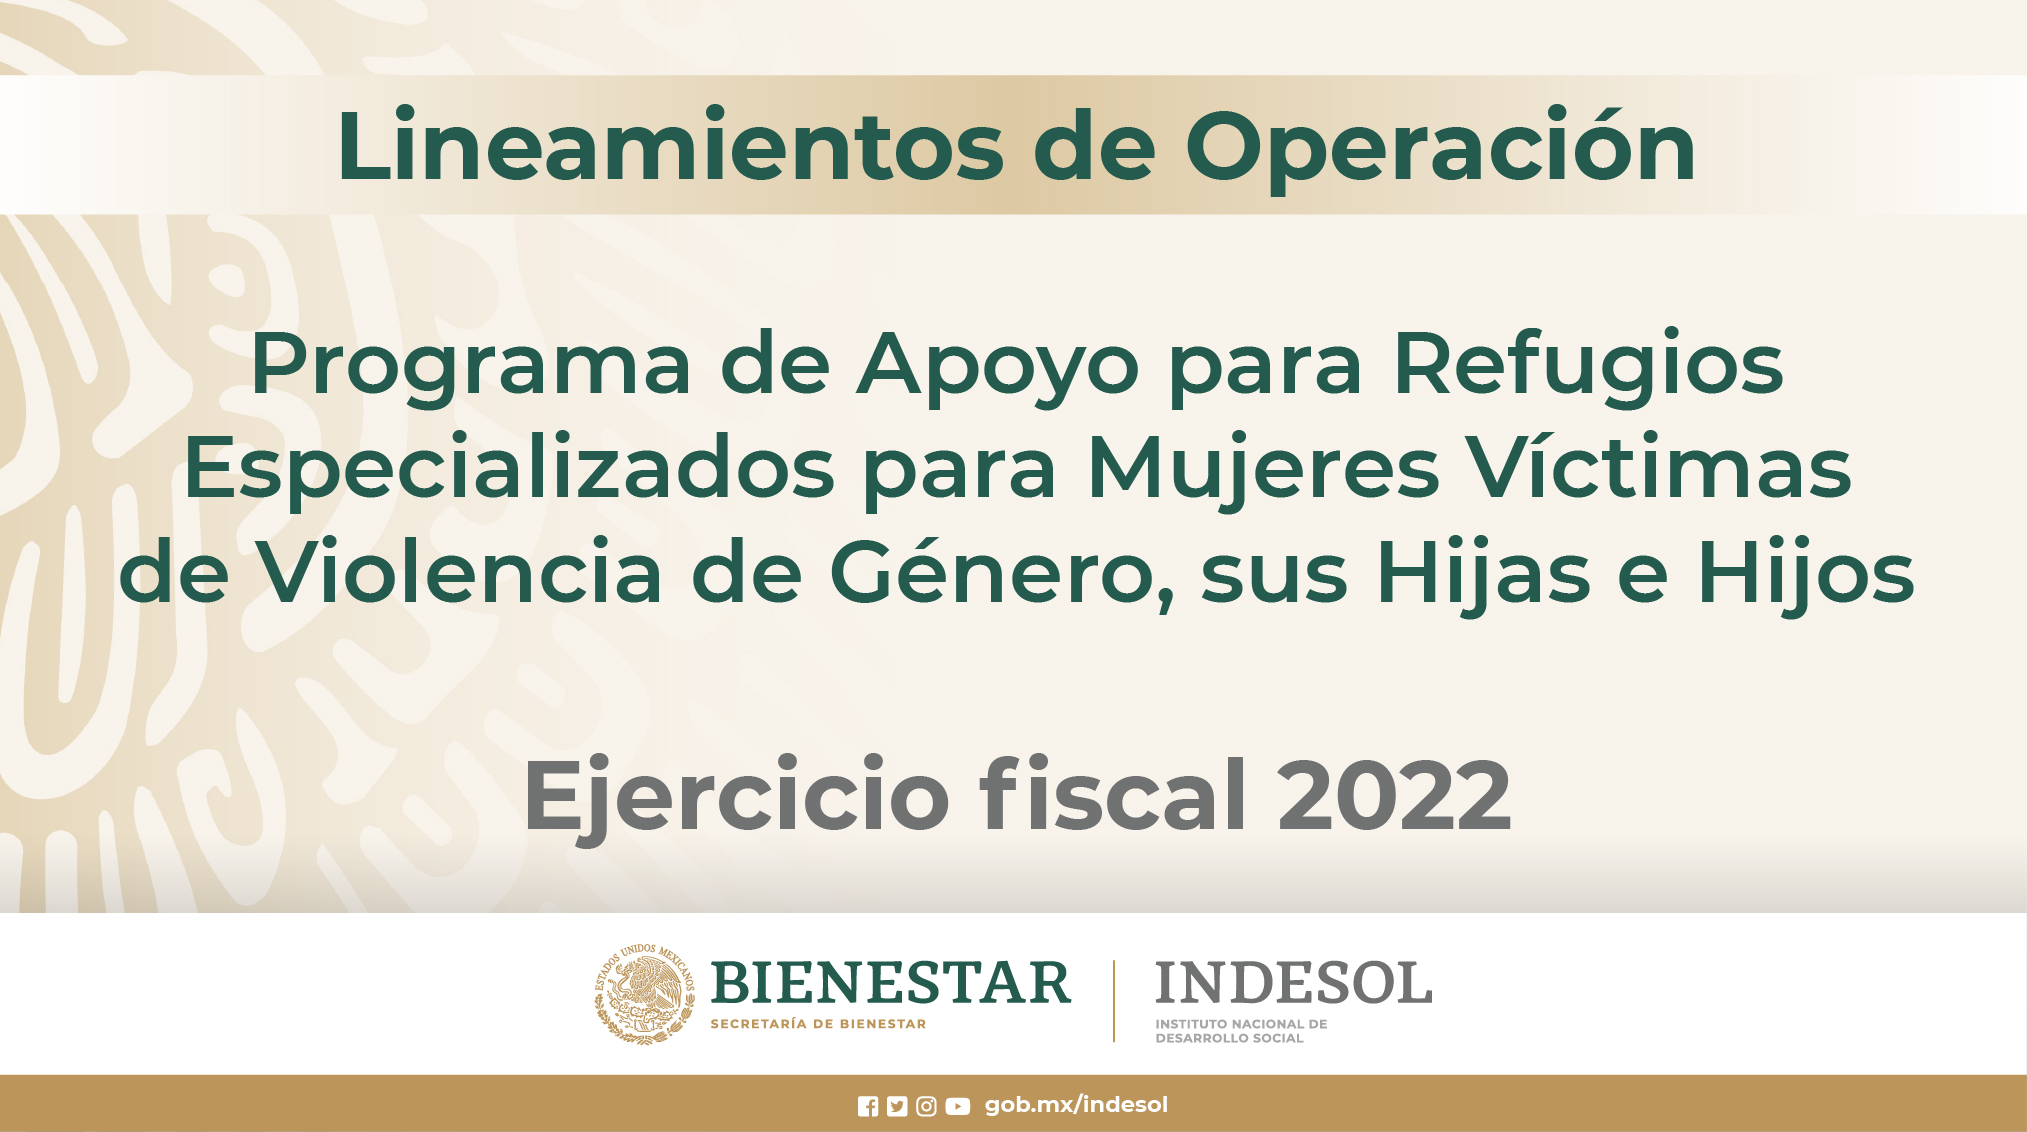 Lineamientos de Operación del Programa de Apoyo para Refugios, 2022
